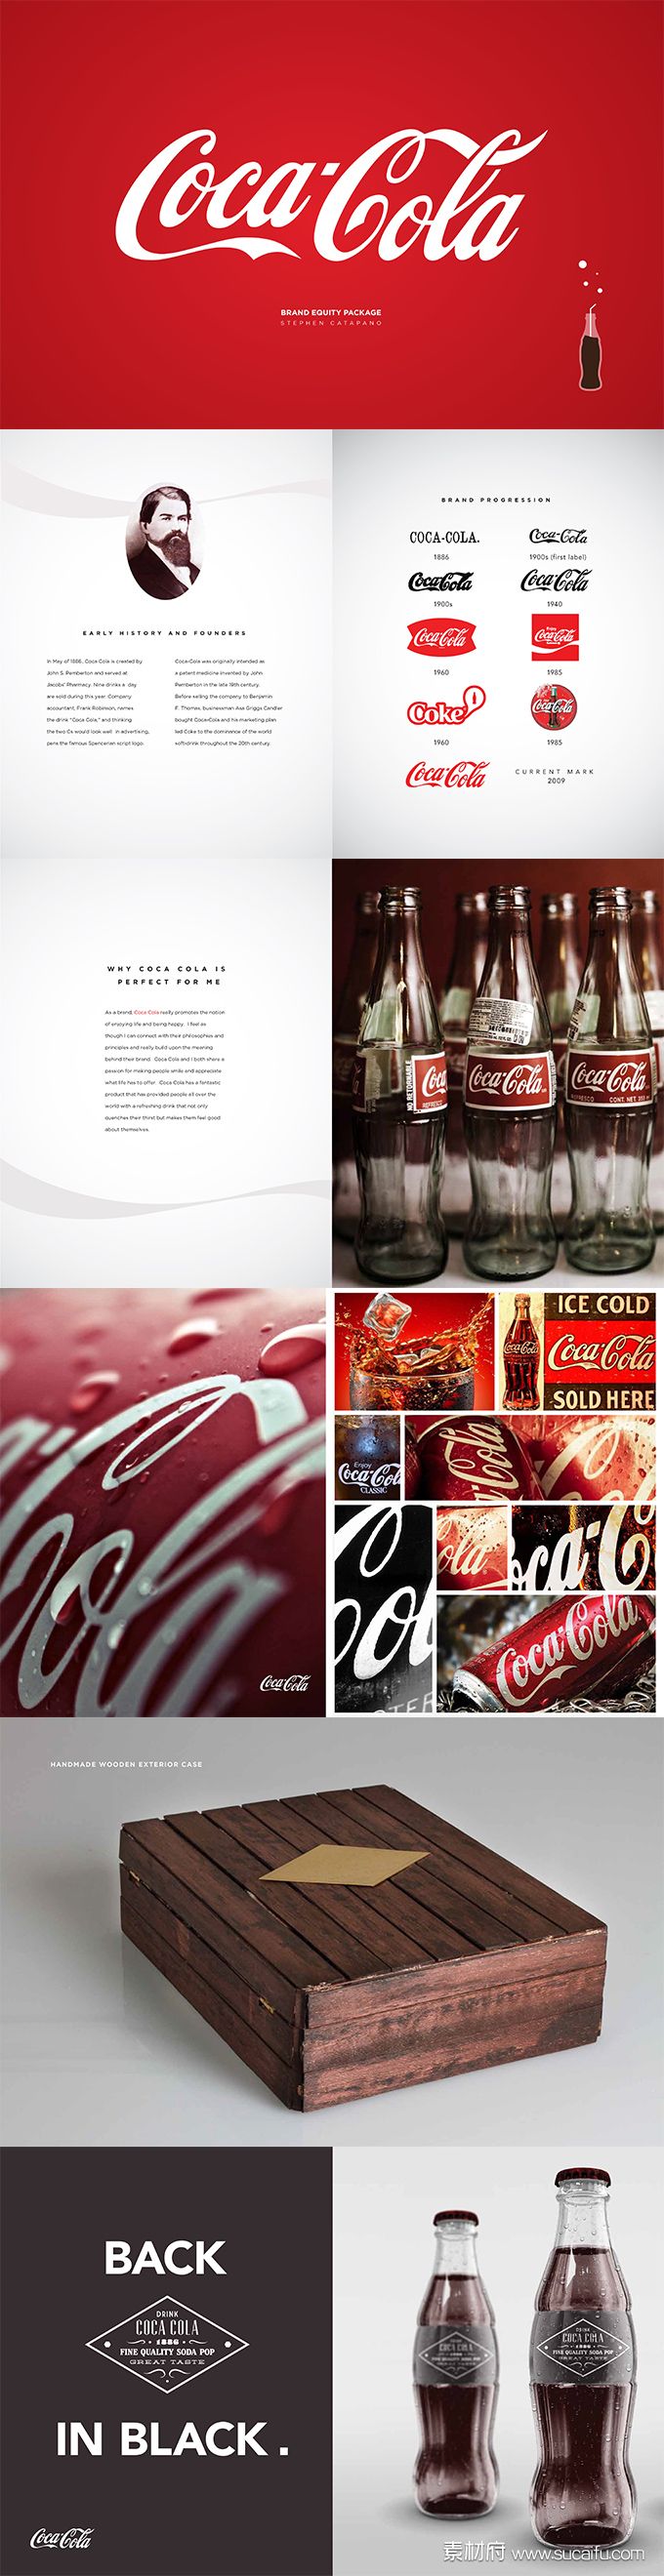 可口可乐品牌包装视觉规范